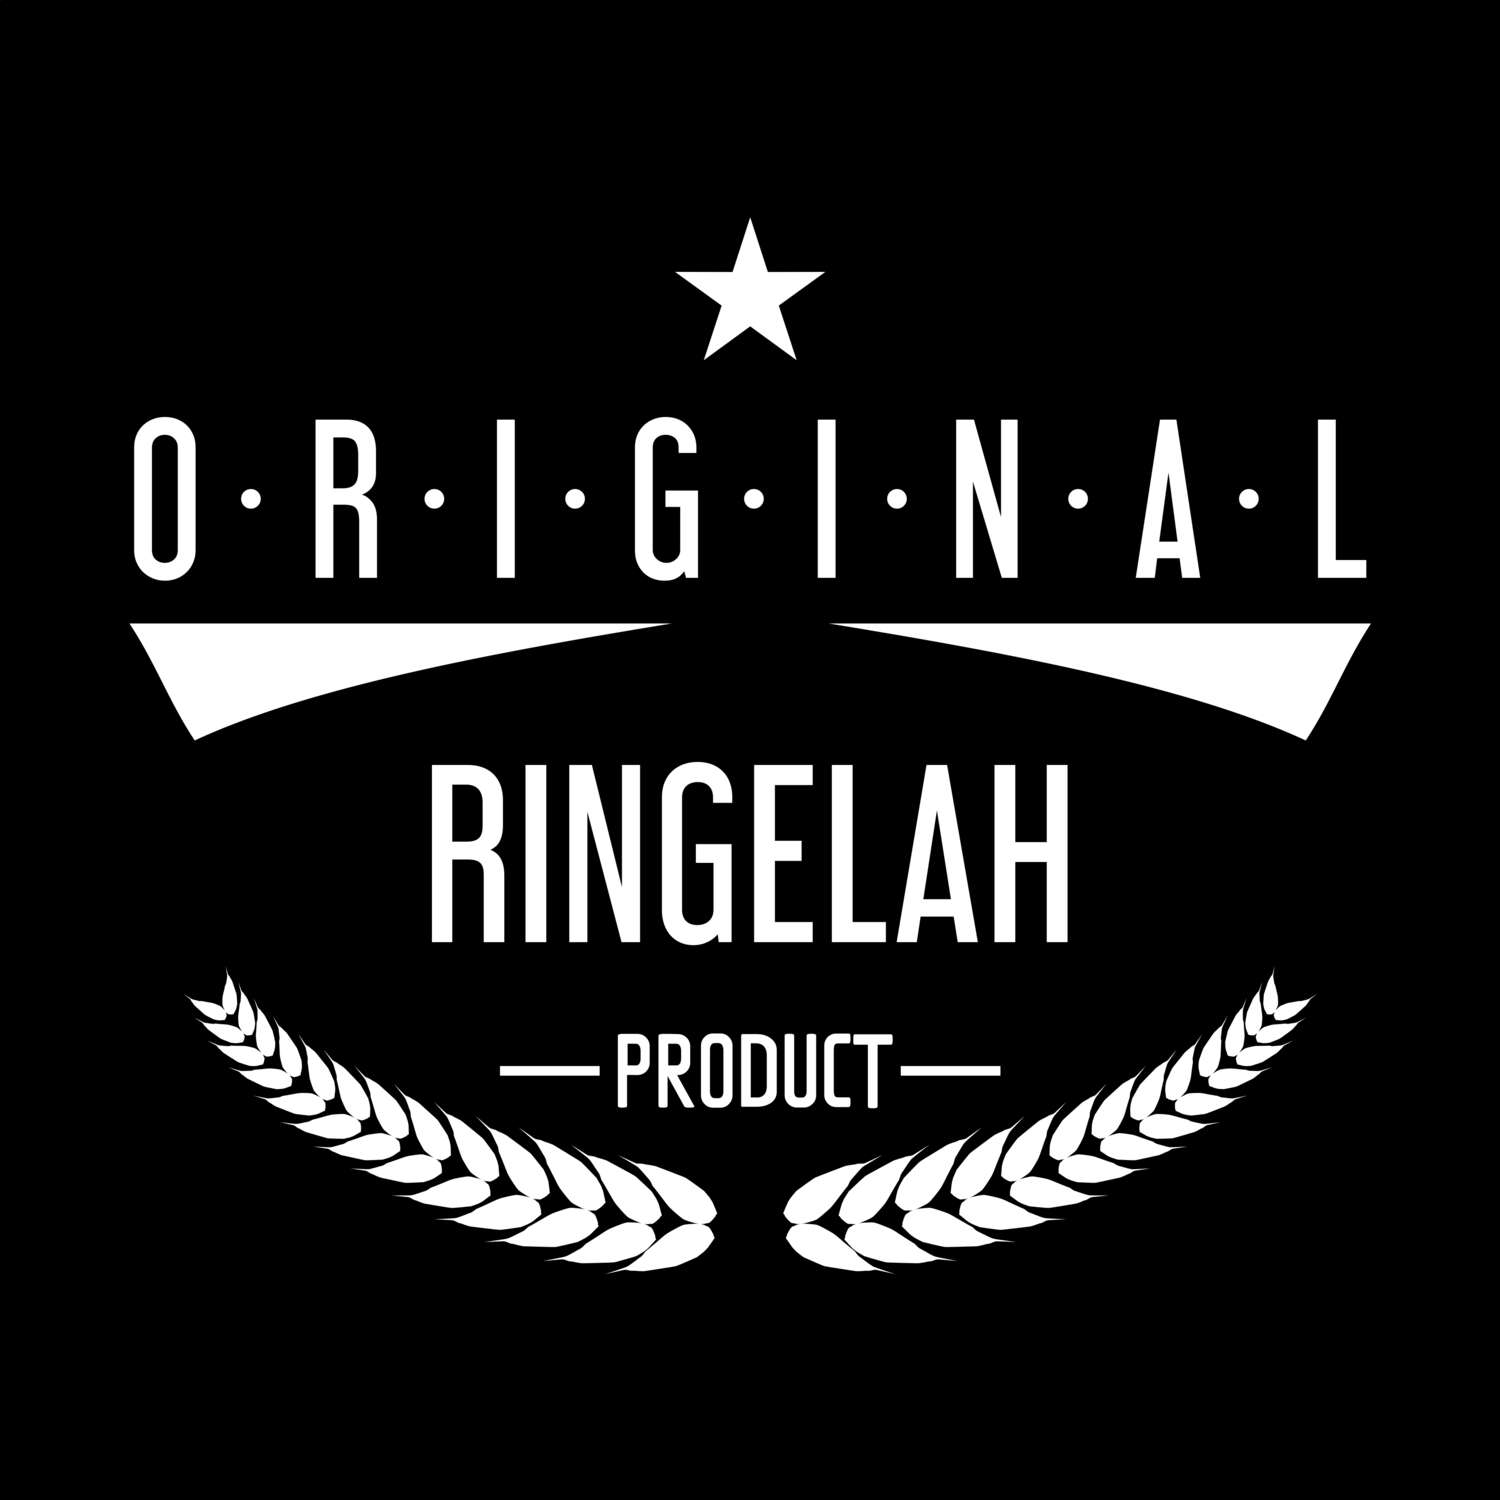 Ringelah T-Shirt »Original Product«